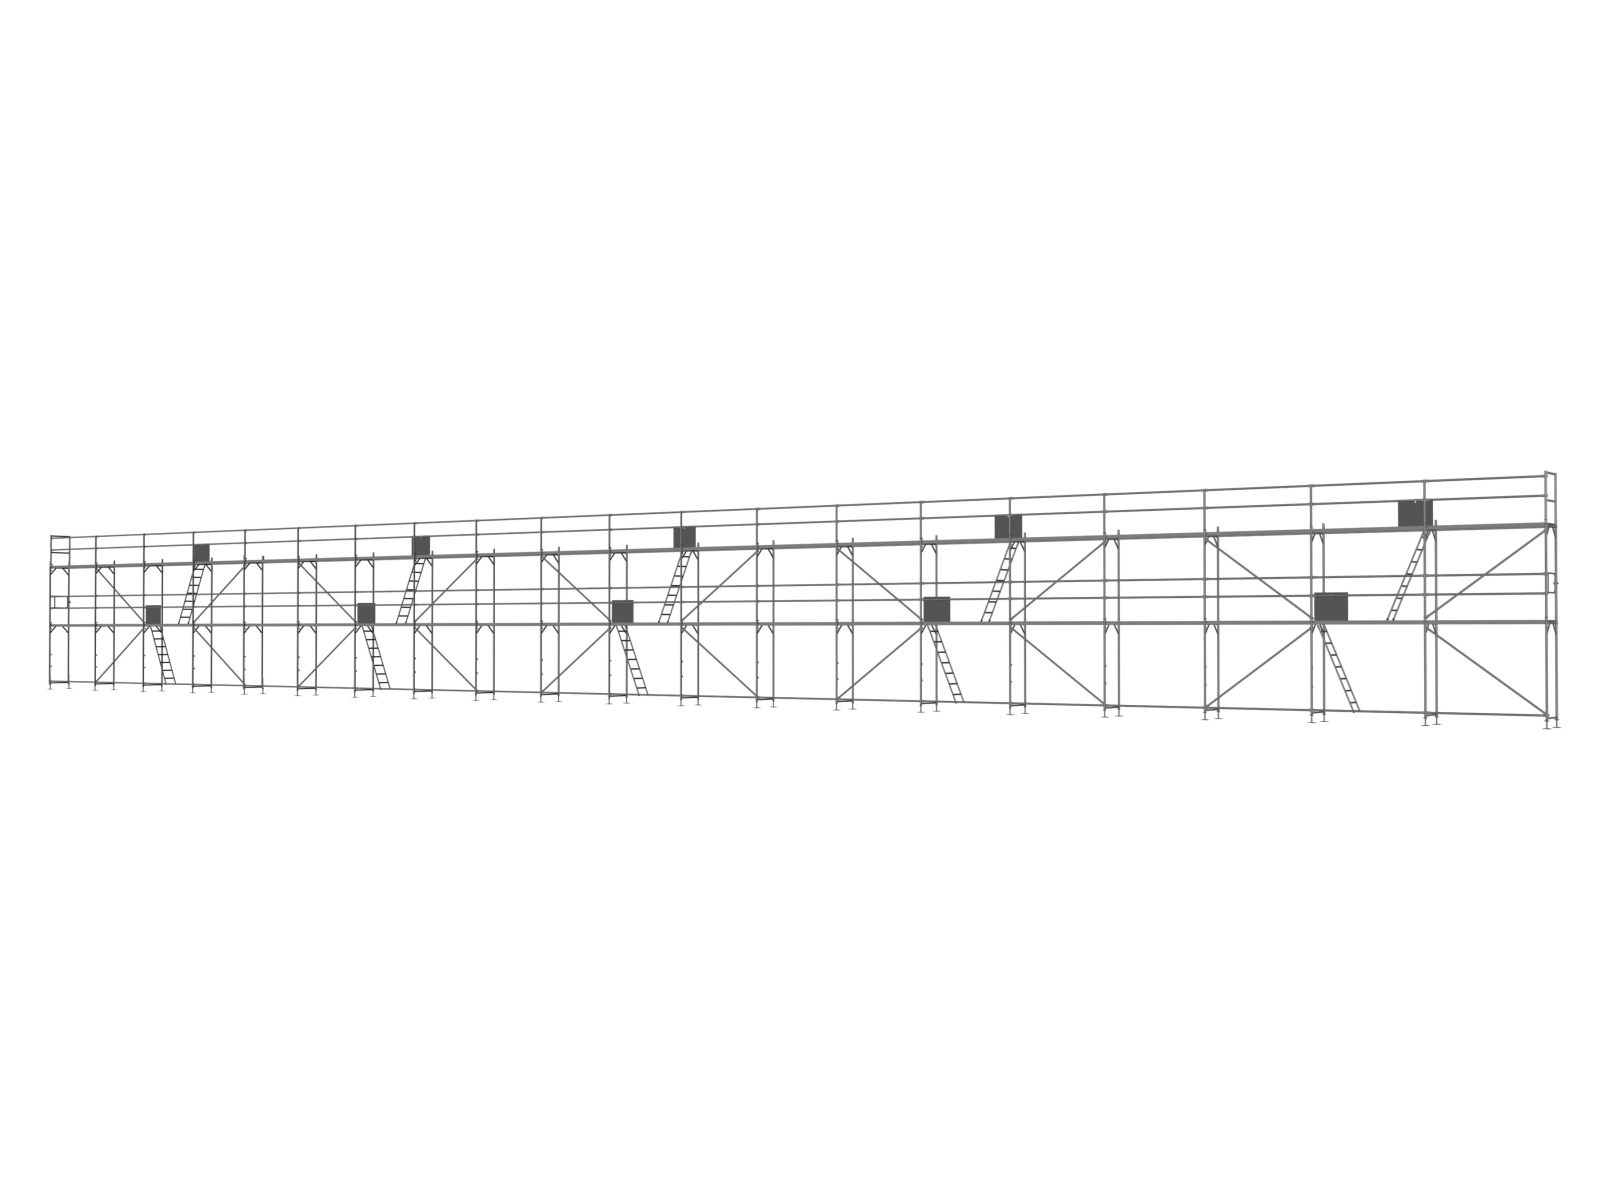 Stahl Traufseitengerüst 300 qm - 2,5 m Felder - 50 m lang - 6 m Arbeitshöhe - Basis-Gerüst inkl. Aufstieg & Befestigung